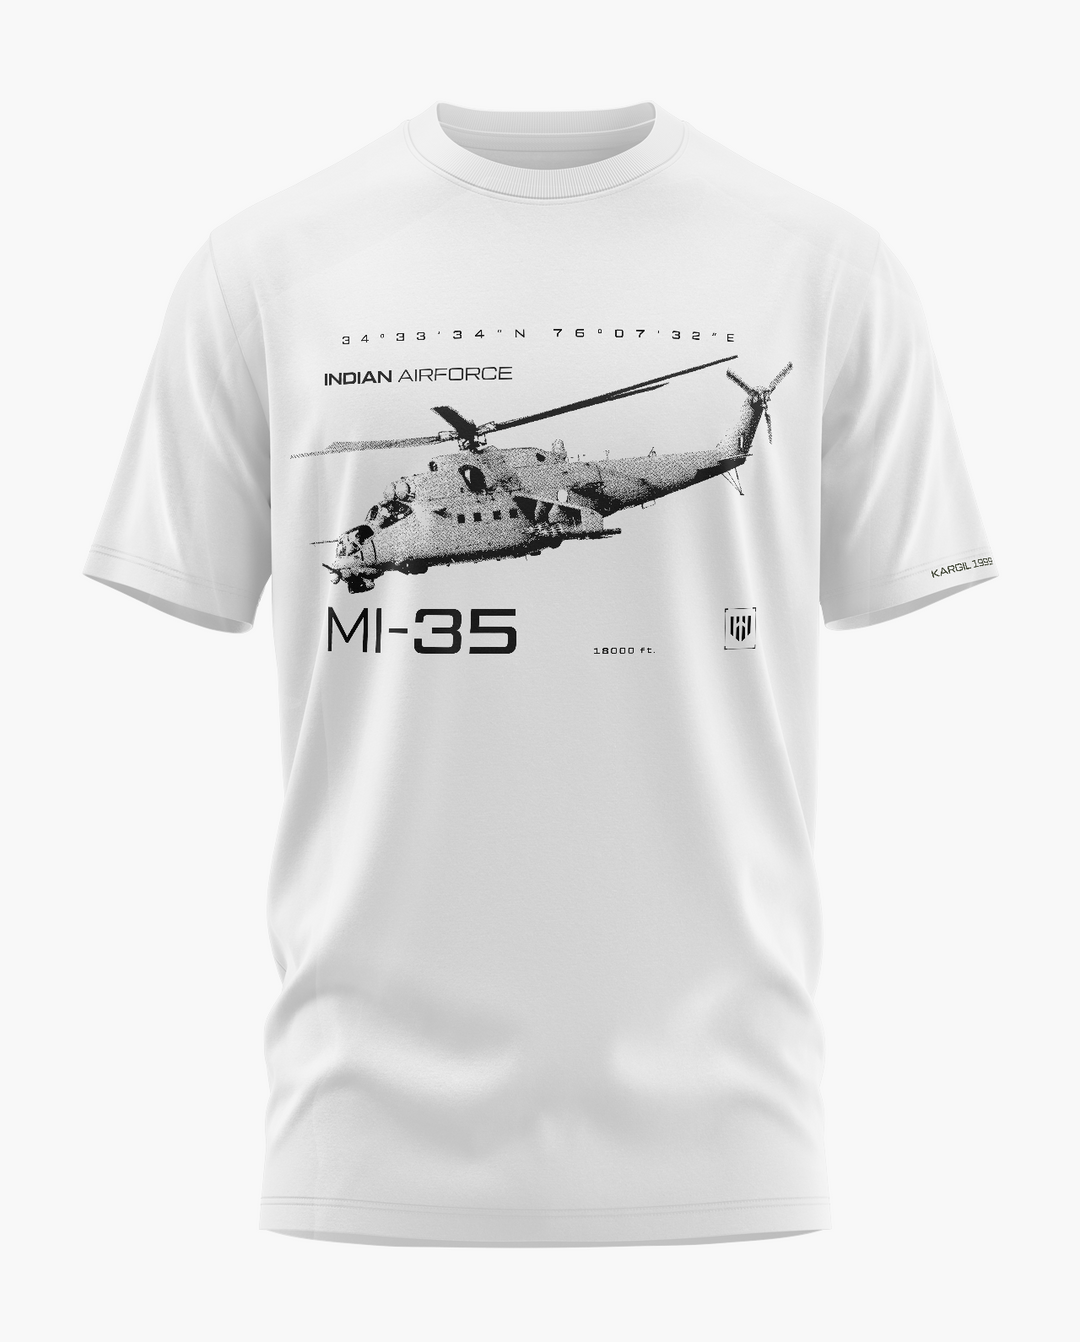 THE MI-35 KARGIL T-Shirt